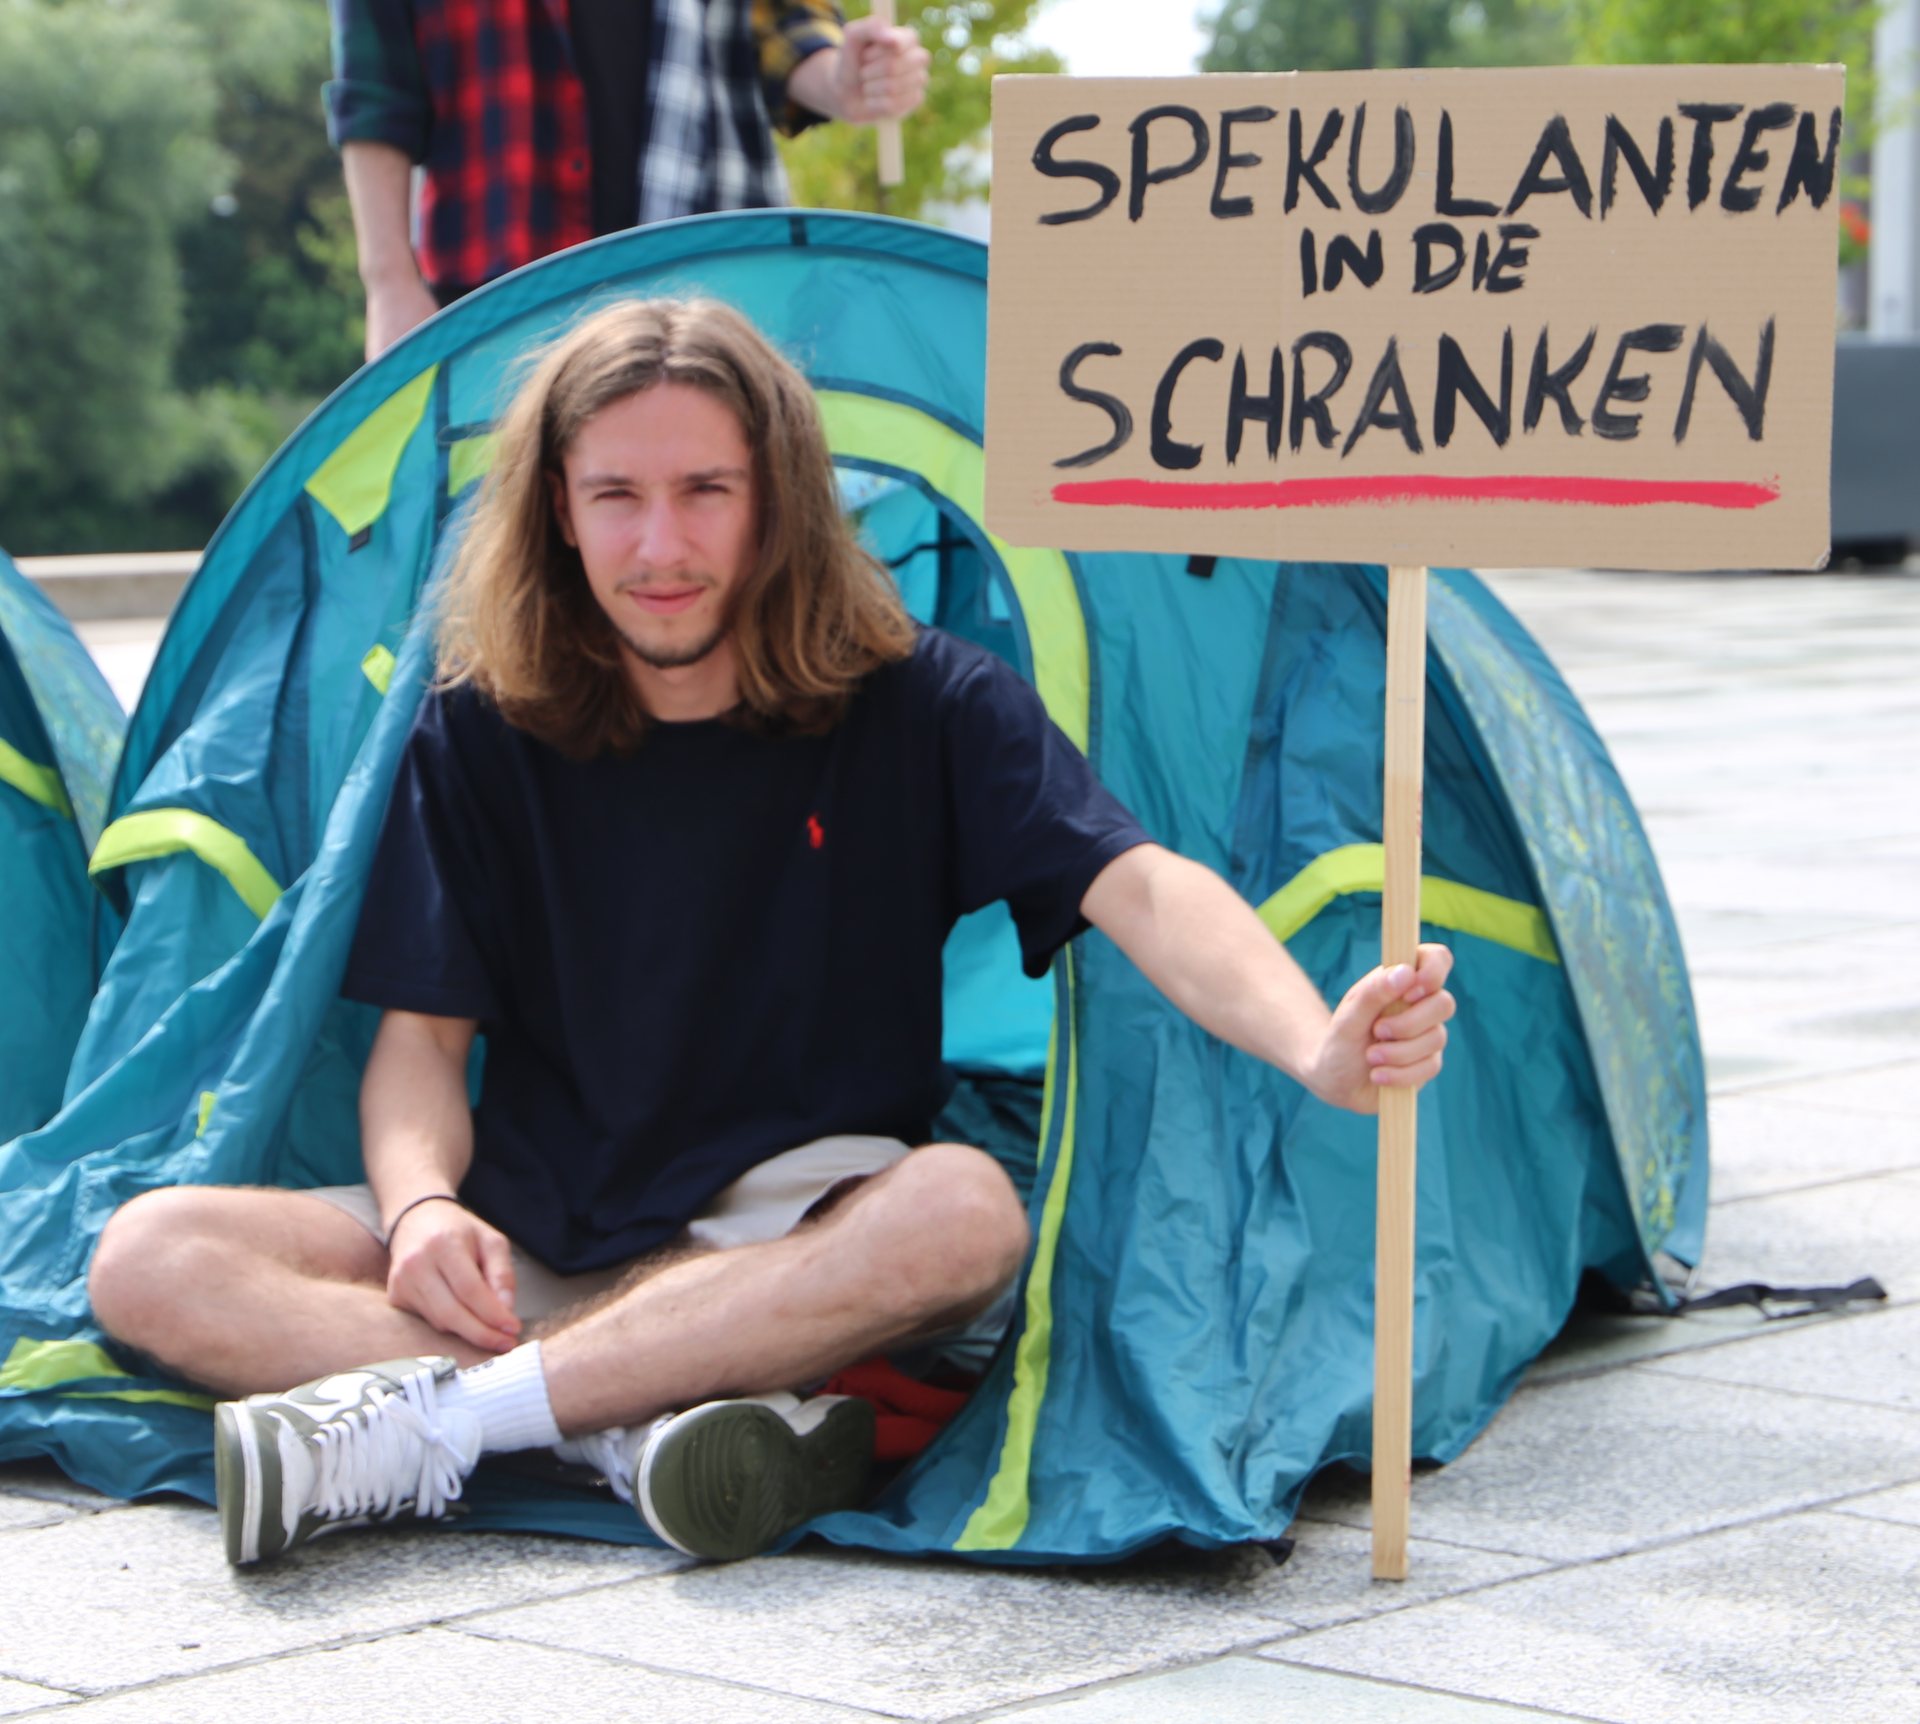 Ein Mann sitzt vor einem Zelt und hält ein Schild. Auf dem Schild steht oben: "Spekulanten in die Schranken".